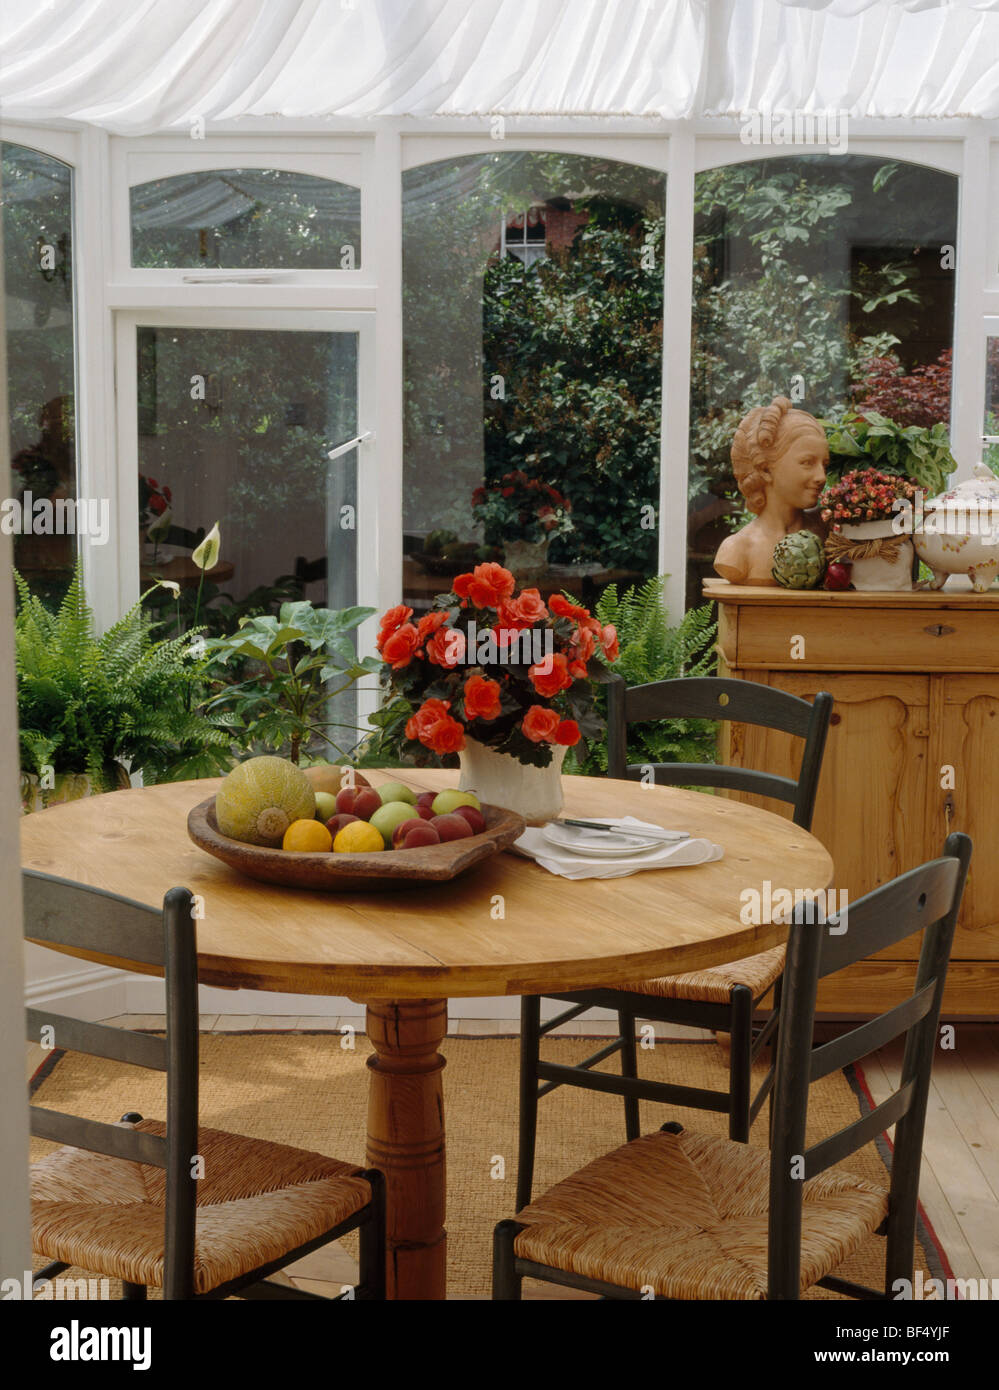 Retour à l'échelle-chaises table circulaire avec vase de fleurs rouge et coupe de fruits dans la salle à manger véranda avec stores blanc Banque D'Images